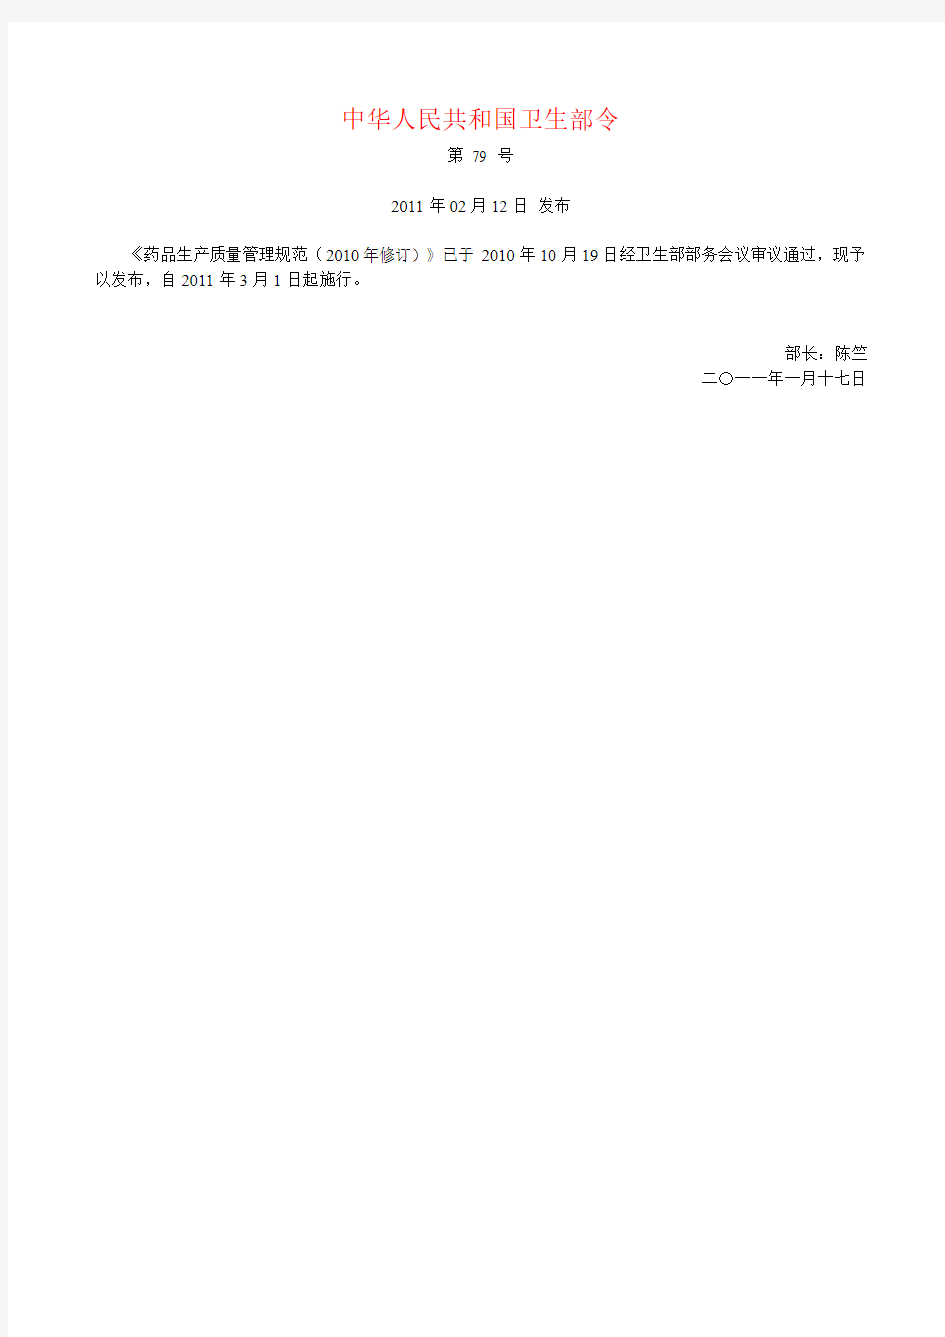 《药品生产质量管理规范(2010年修订)》中华人民共和国卫生部  第79号令